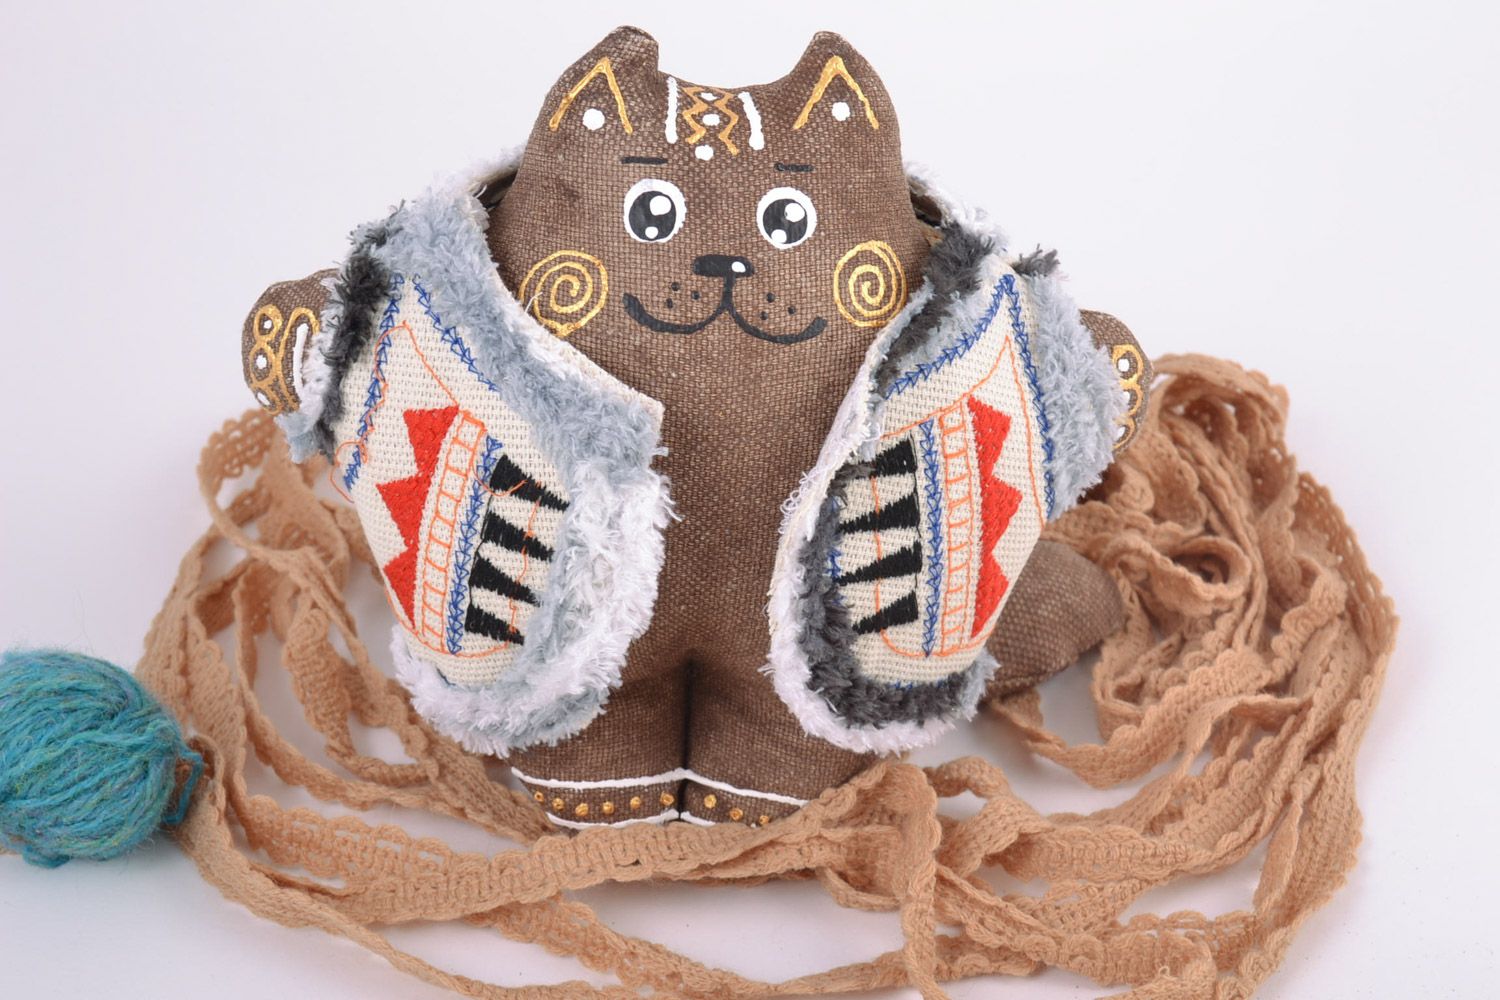 Petite peluche décorative en tissu peinte faite main chat en gilet originale photo 1